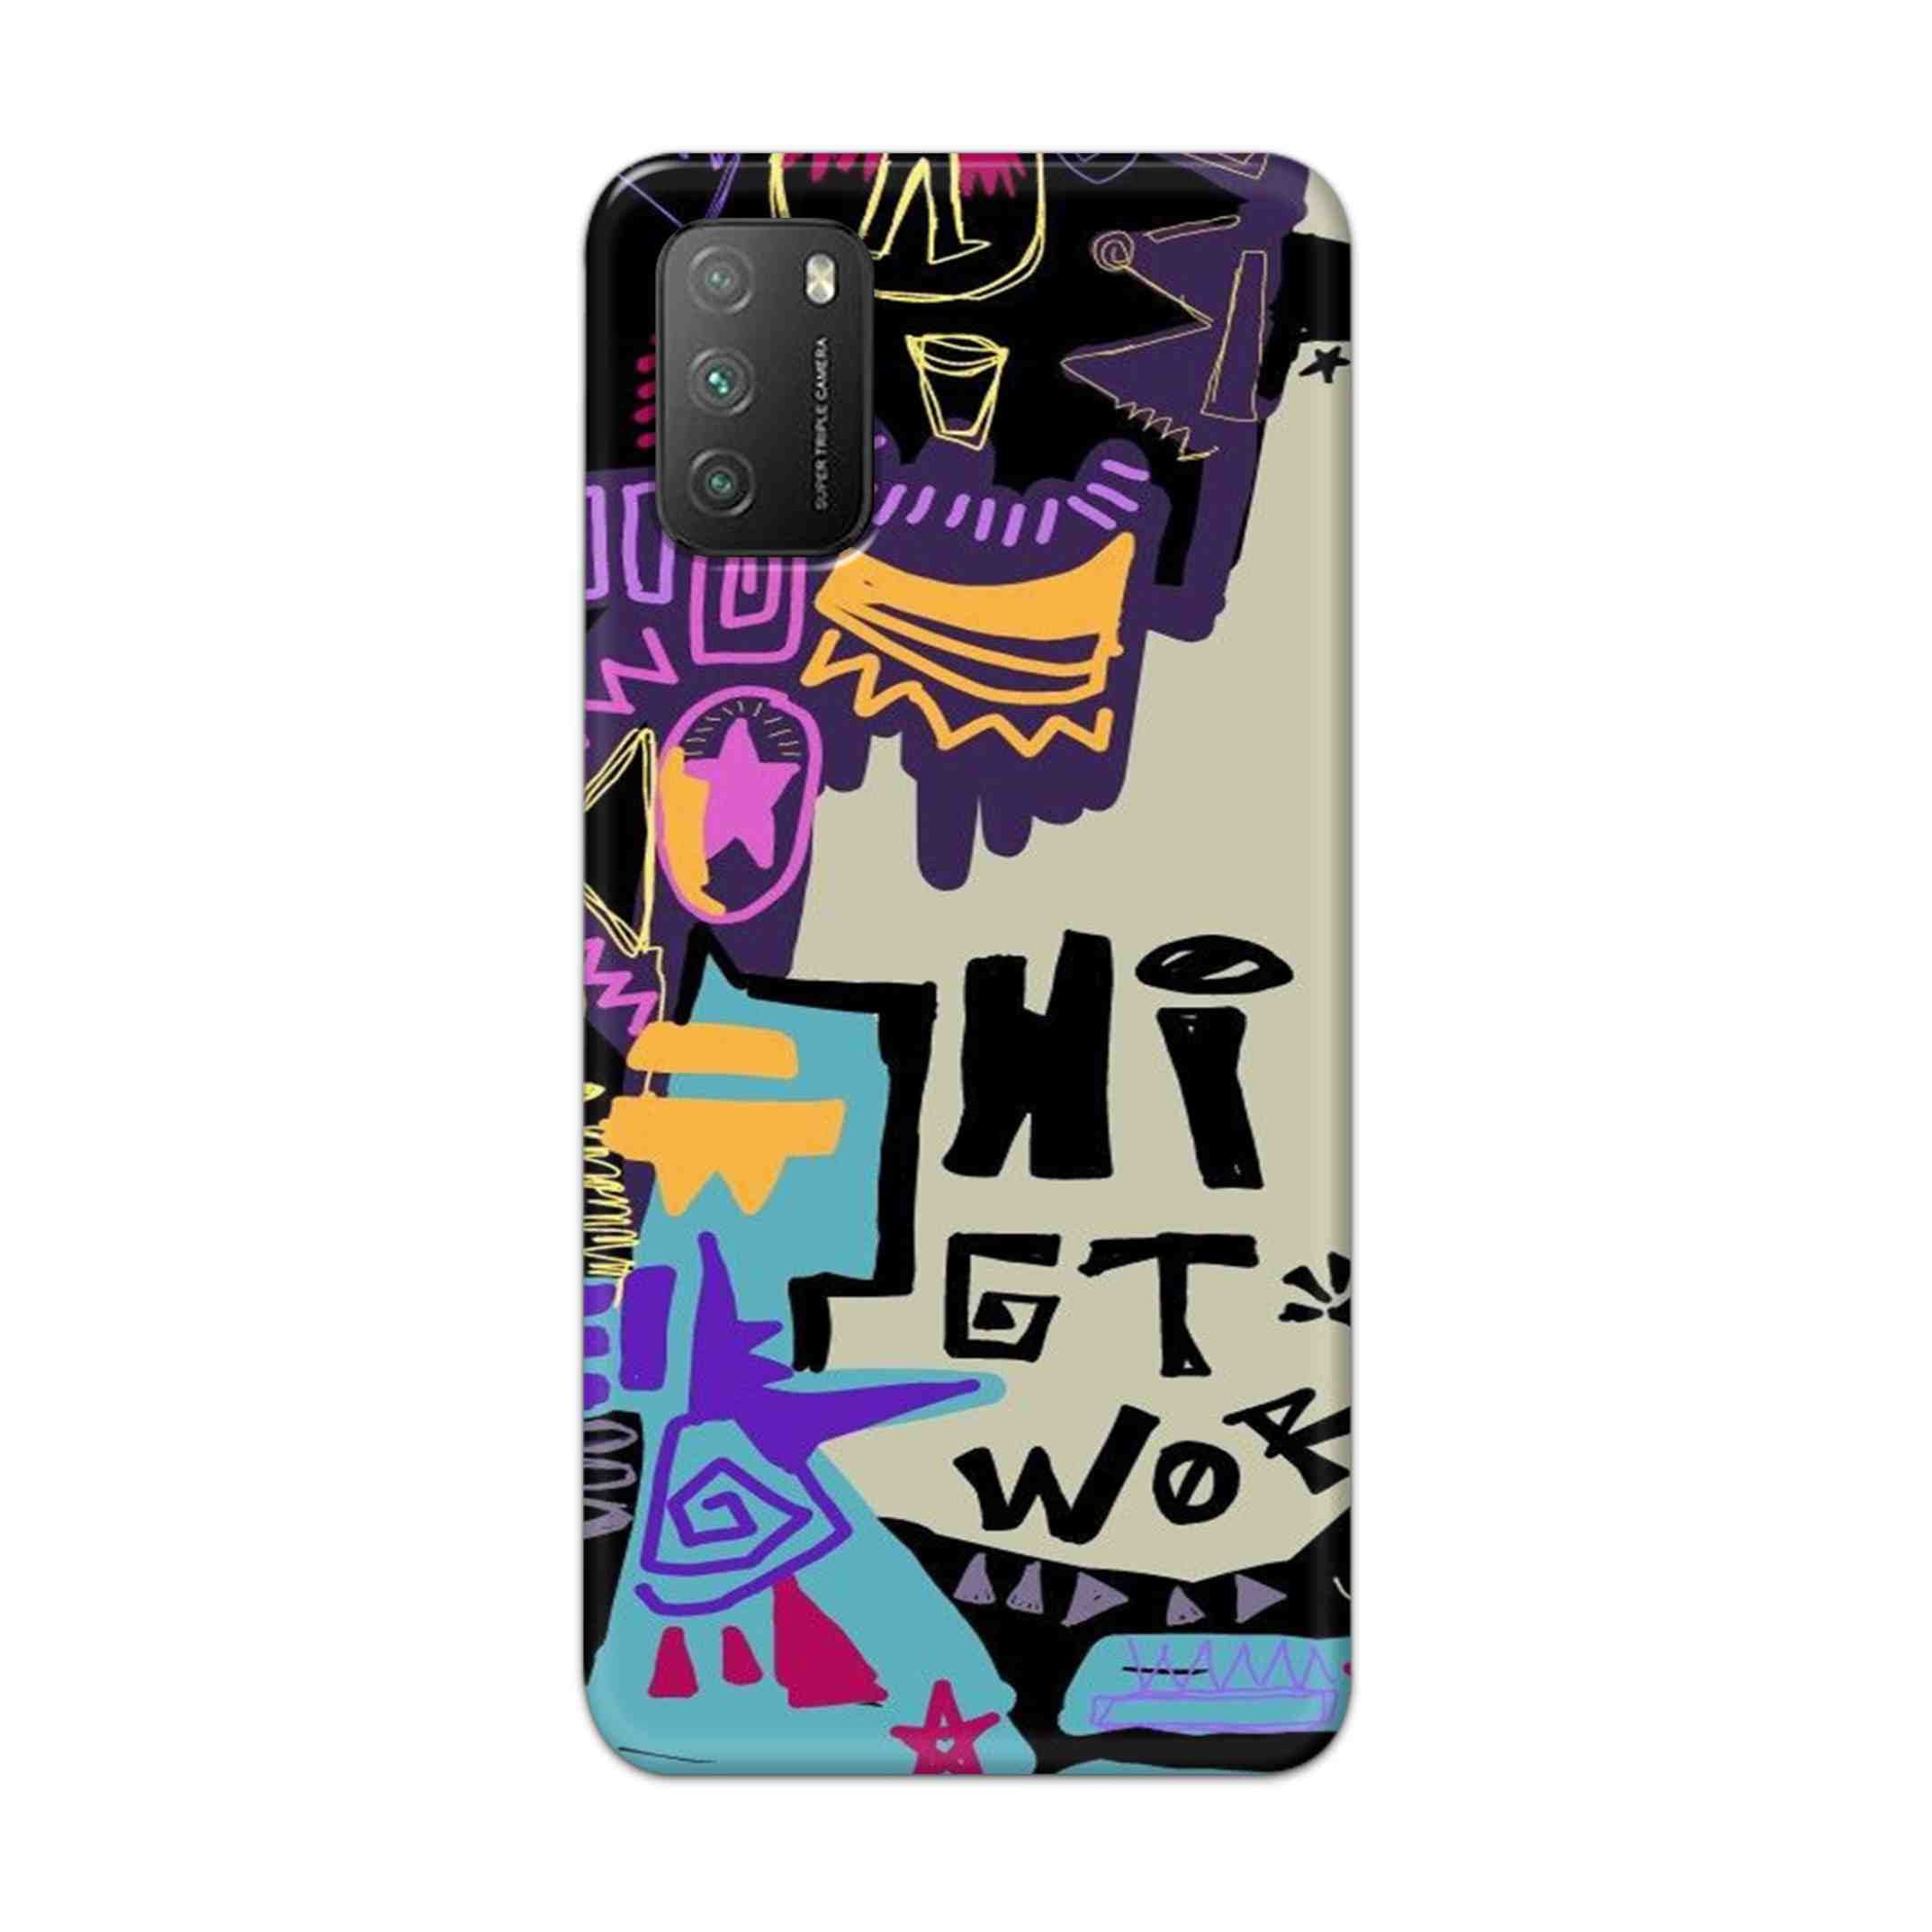 Buy Hi Gt World Hard Back Mobile Phone Case Cover For Poco M3 Online